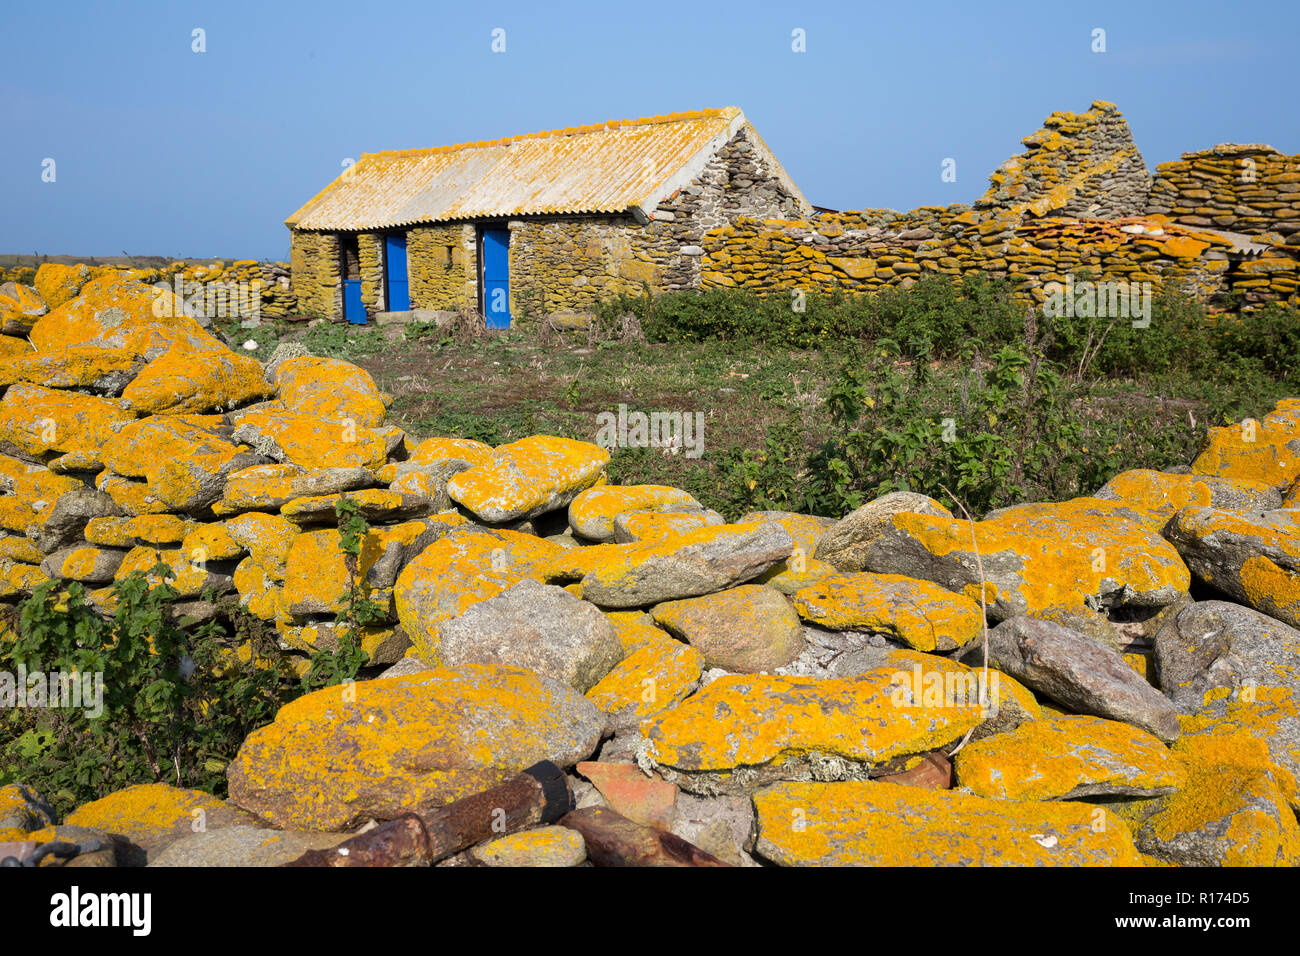 Ancienne ferme en pierre recouvert de lichen jaune dans l'île de Quemenes, Bretagne, France Banque D'Images